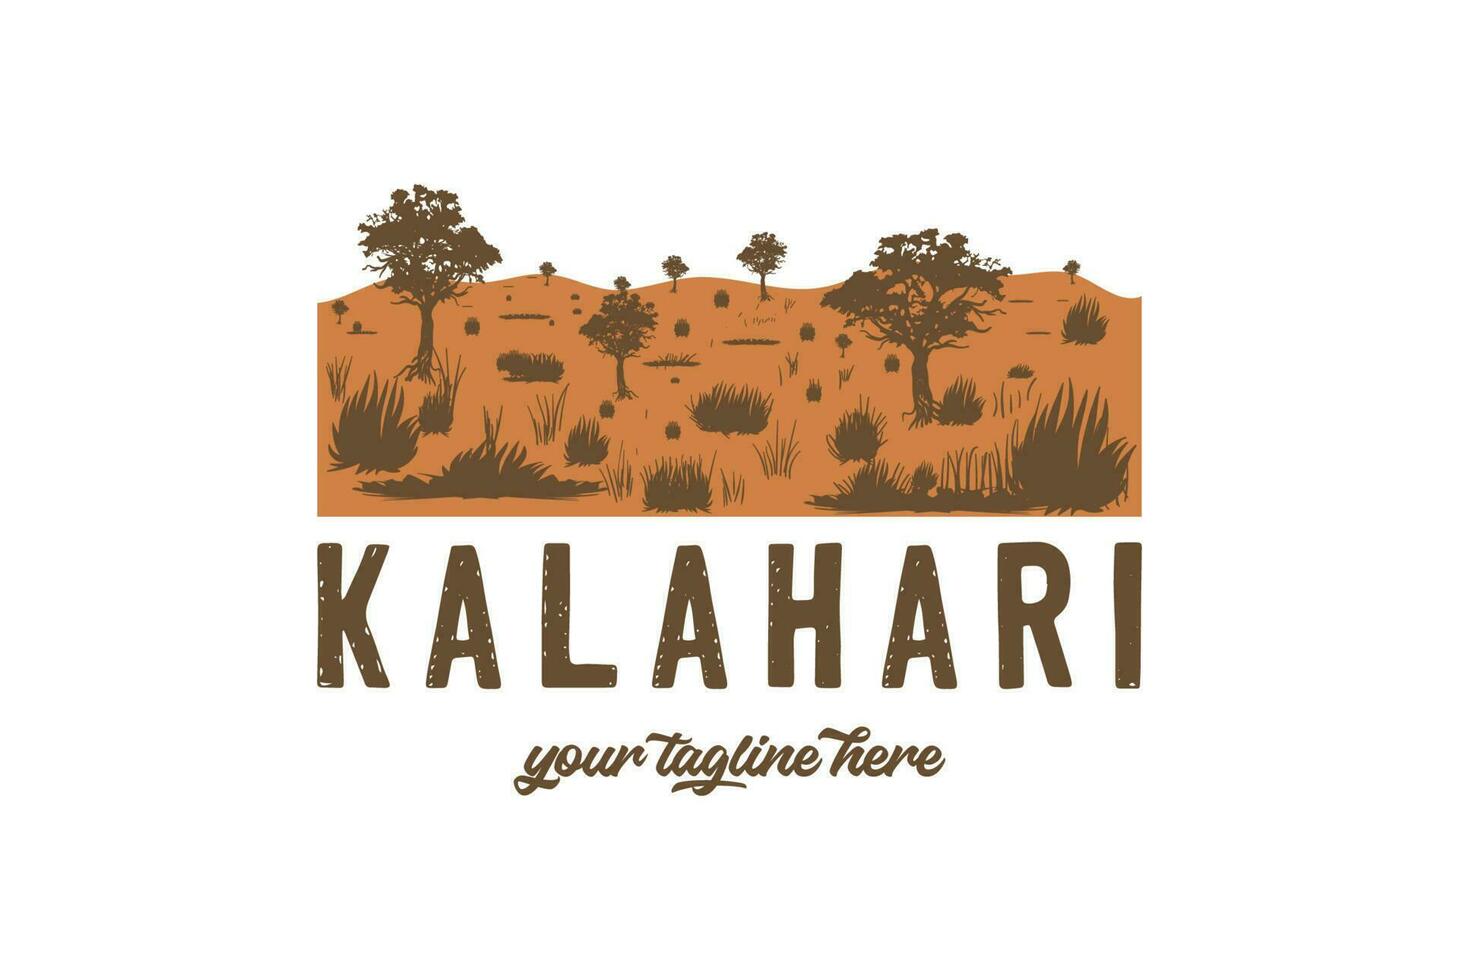 Vintage ▾ retrò africano kalahari deserto nazionale parco per all'aperto avventura t camicia logo illustrazione vettore